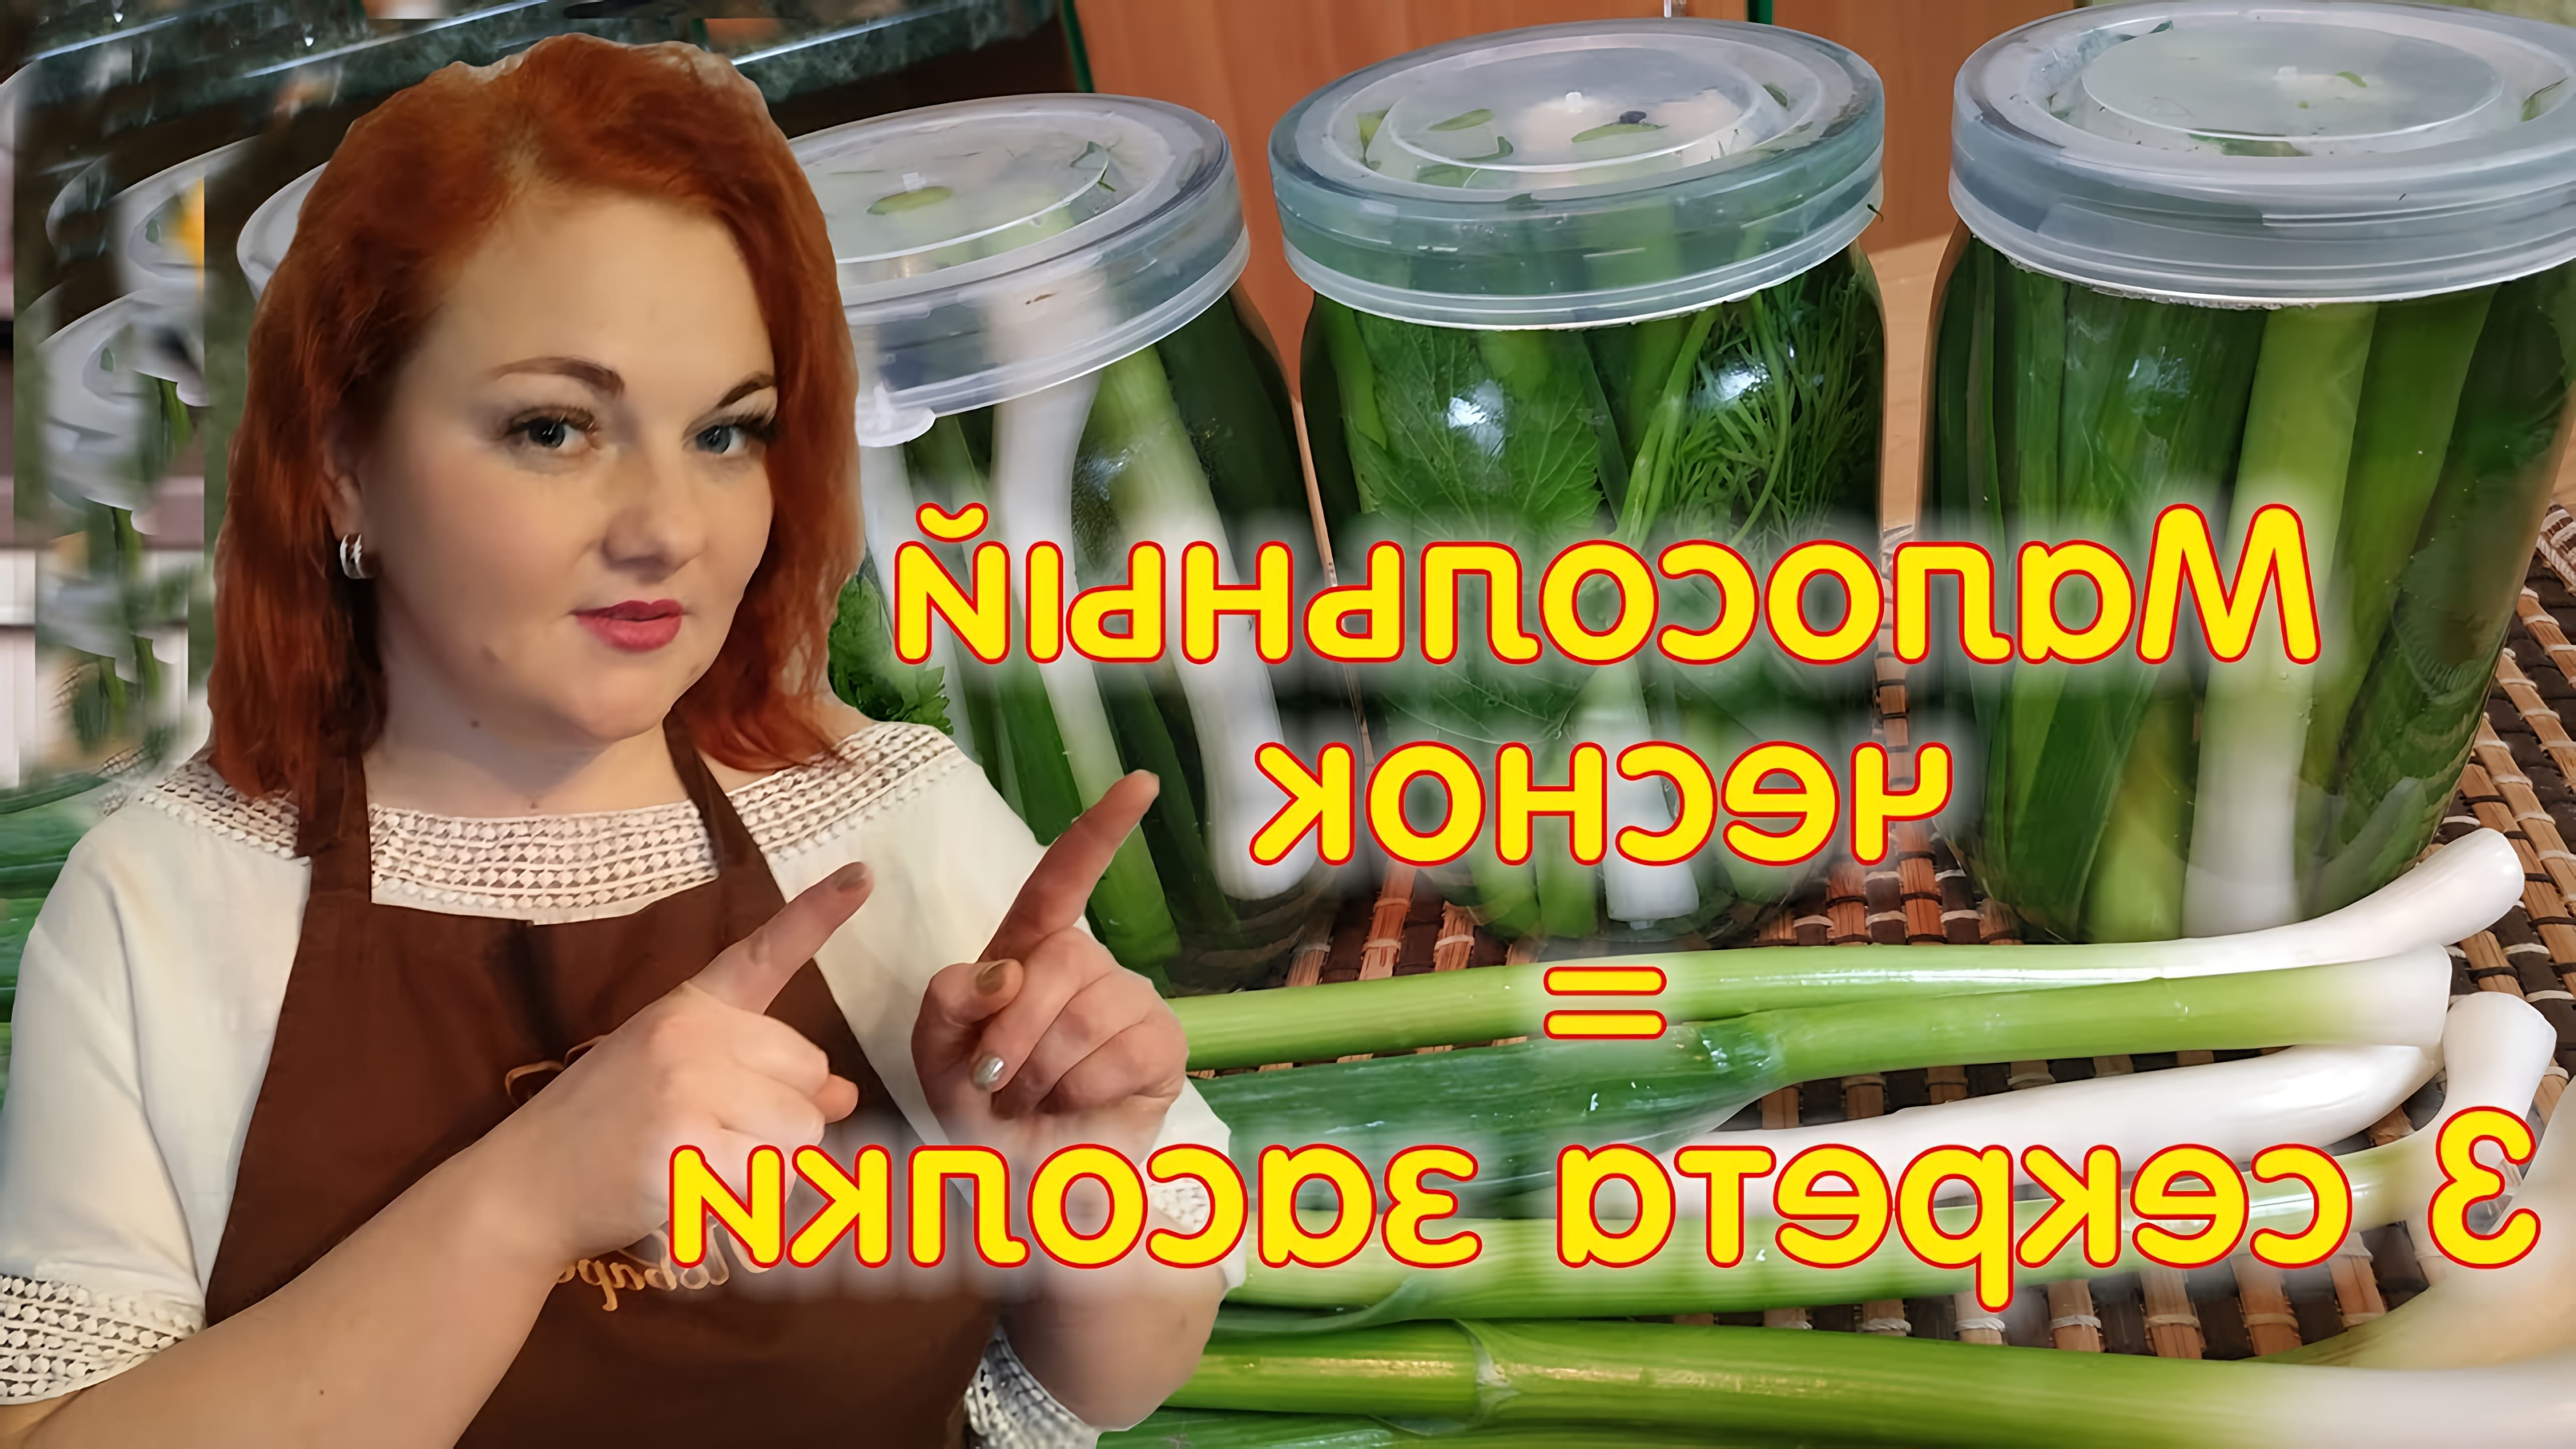 В данном видео Елена, ведущая канала "Твой поваренок", рассказывает о том, как заготавливать молодой чеснок на зиму